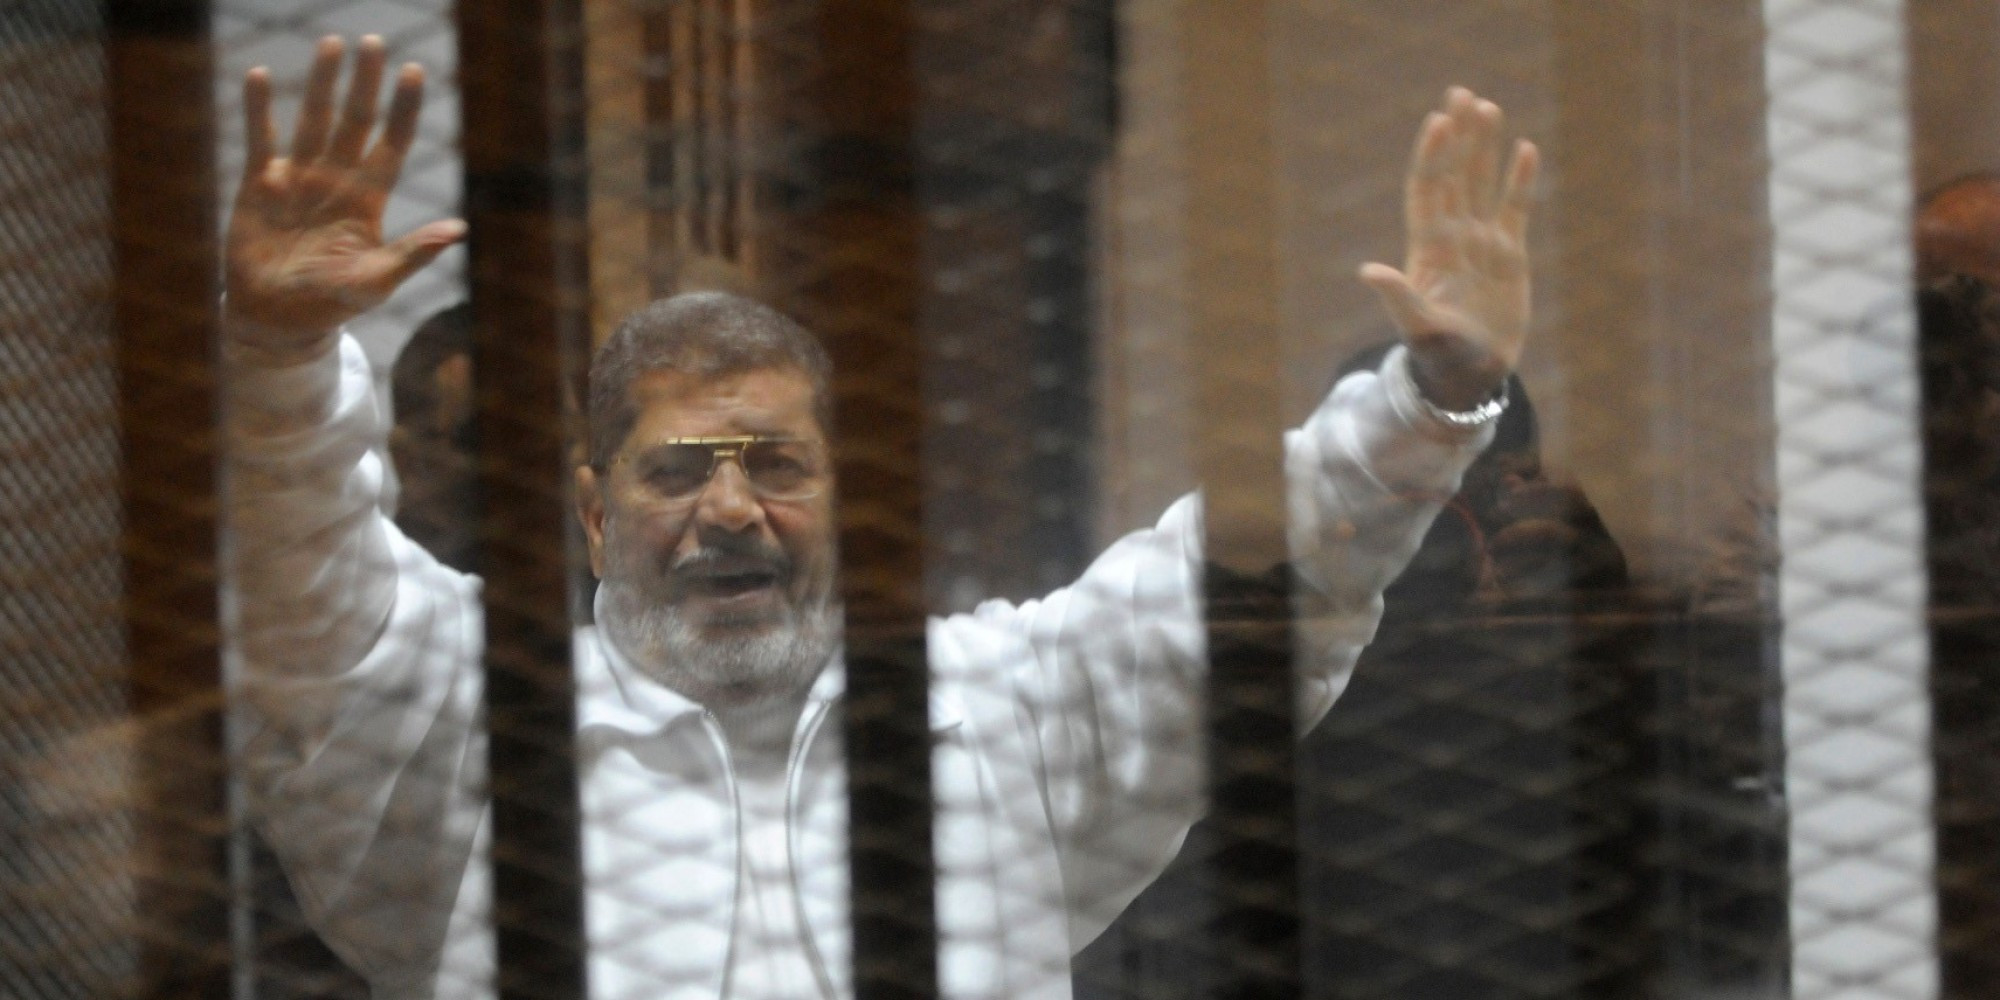 Αίγυπτος: Σε ισόβια καταδικάστηκε ο πρώην πρόεδρος Μοχάμεντ Μόρσι